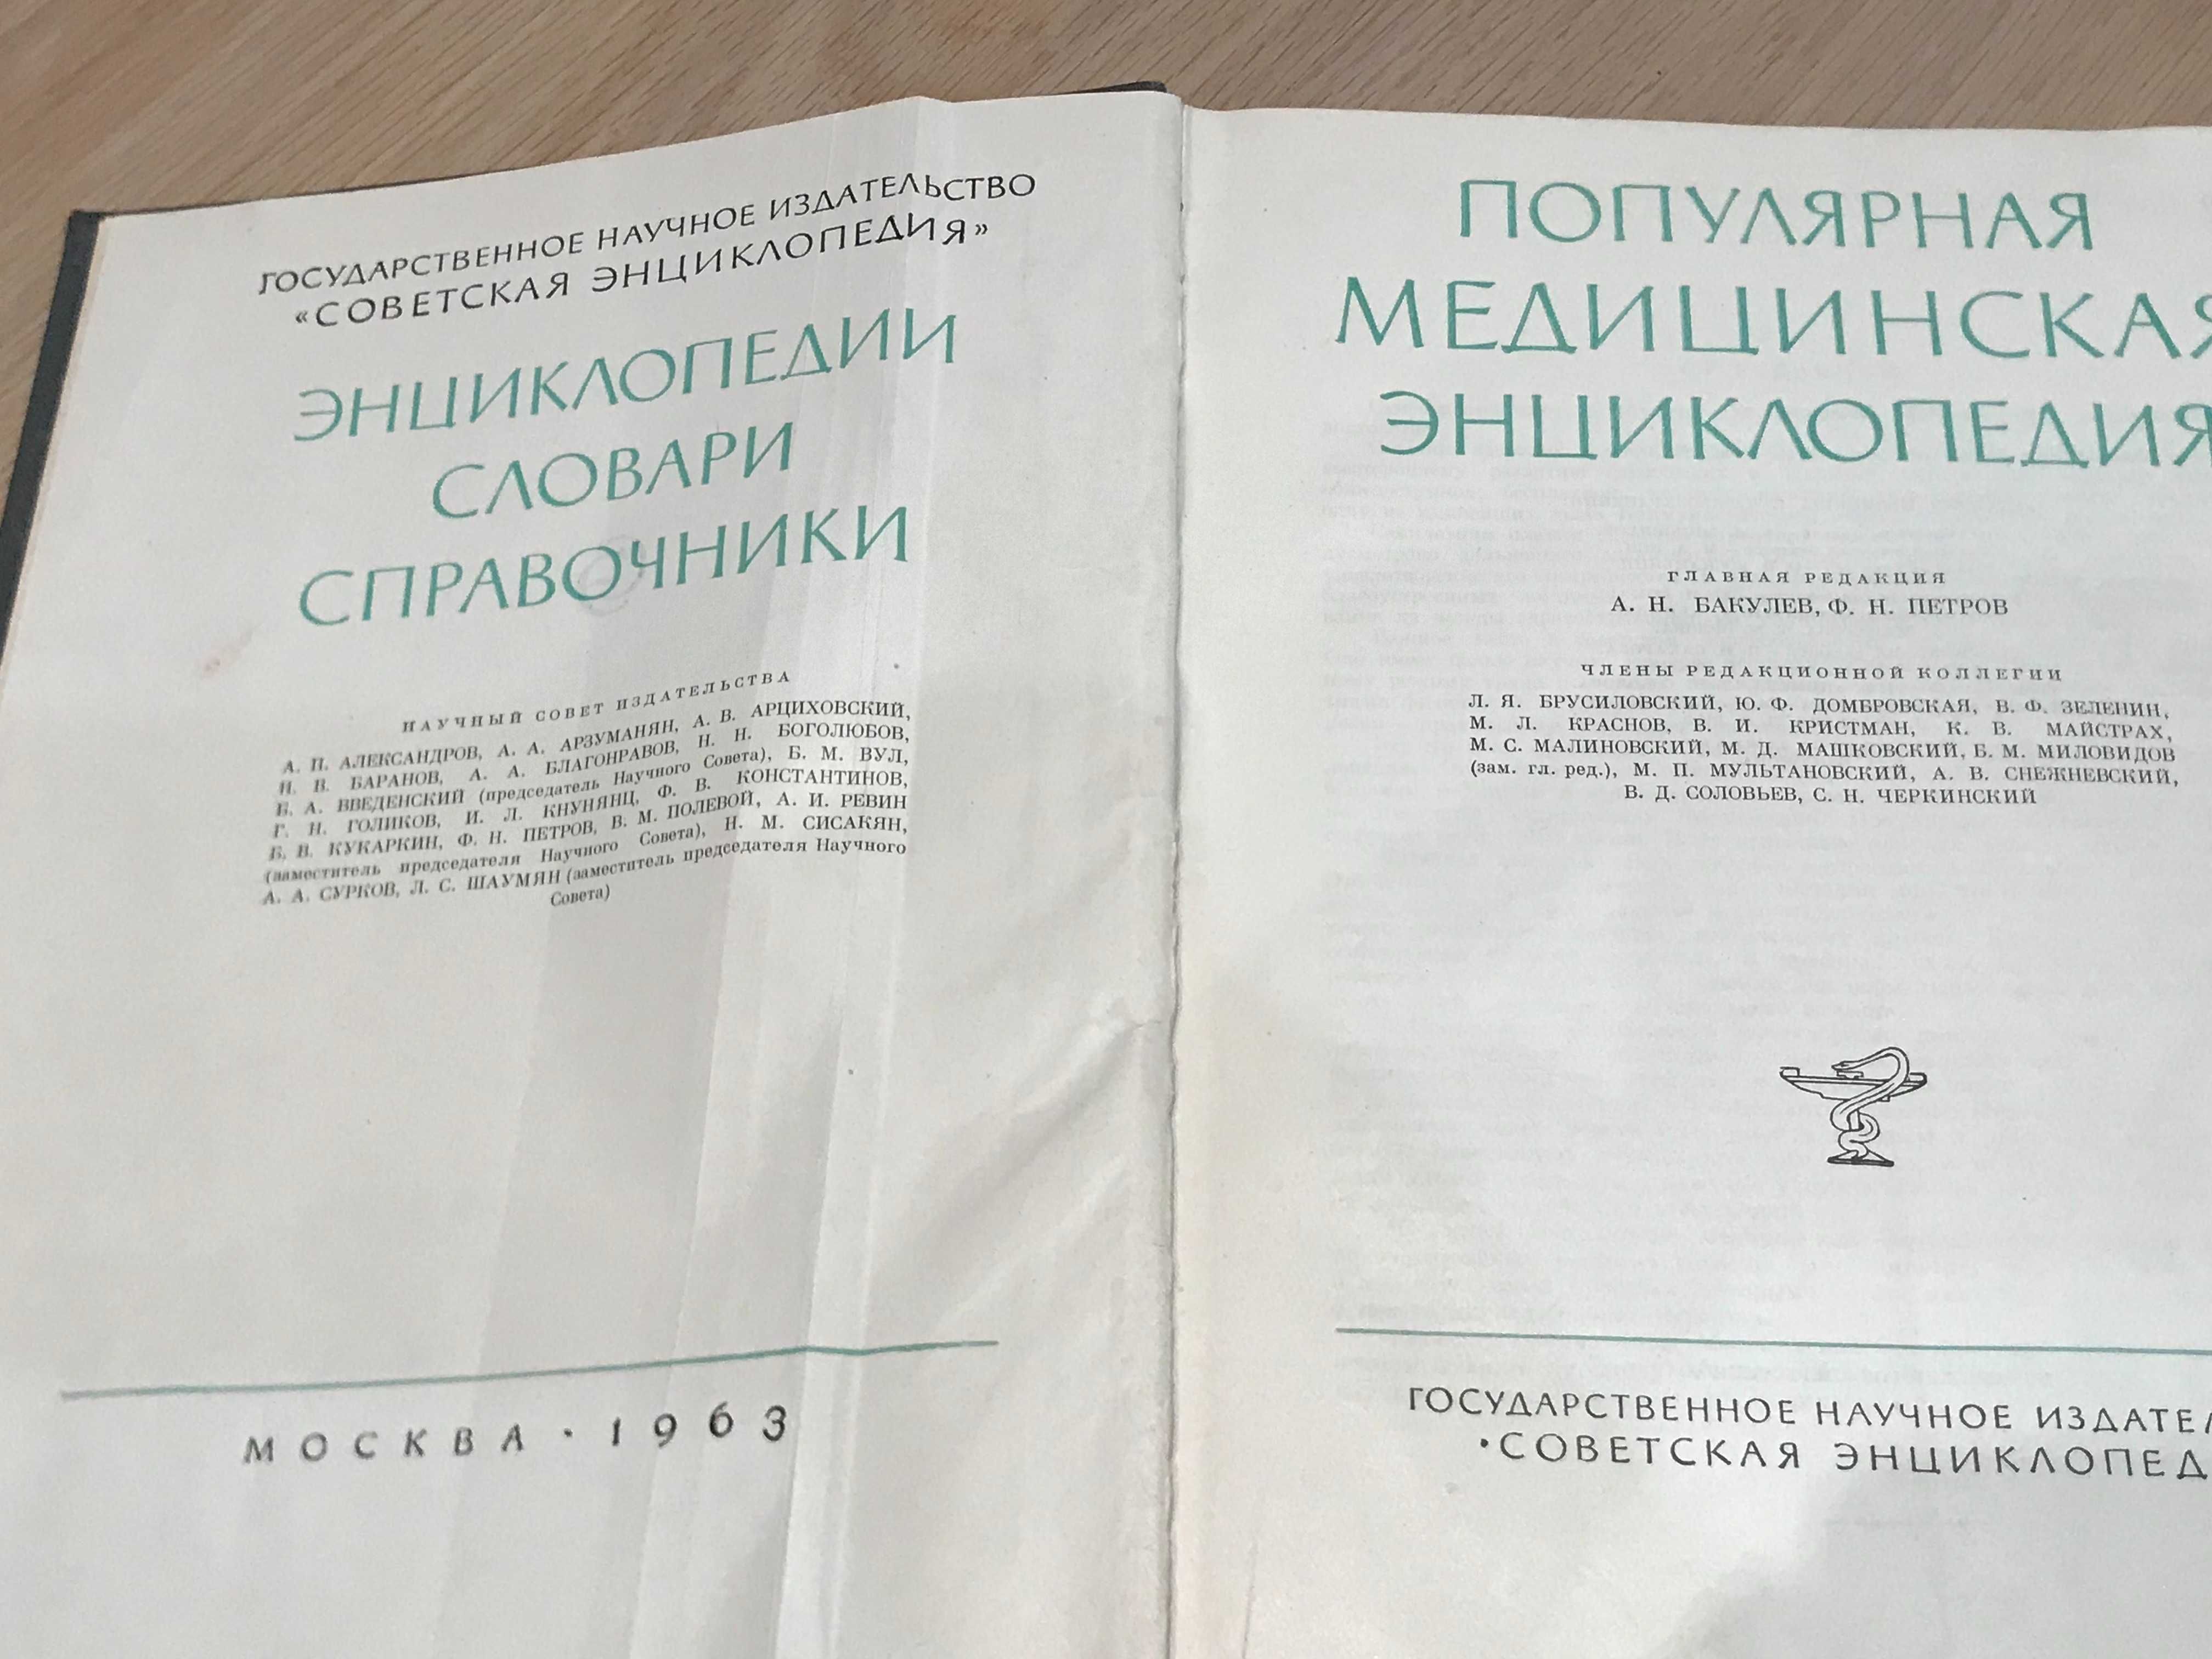 Медицинская энциклопедия. изд. 1963 год